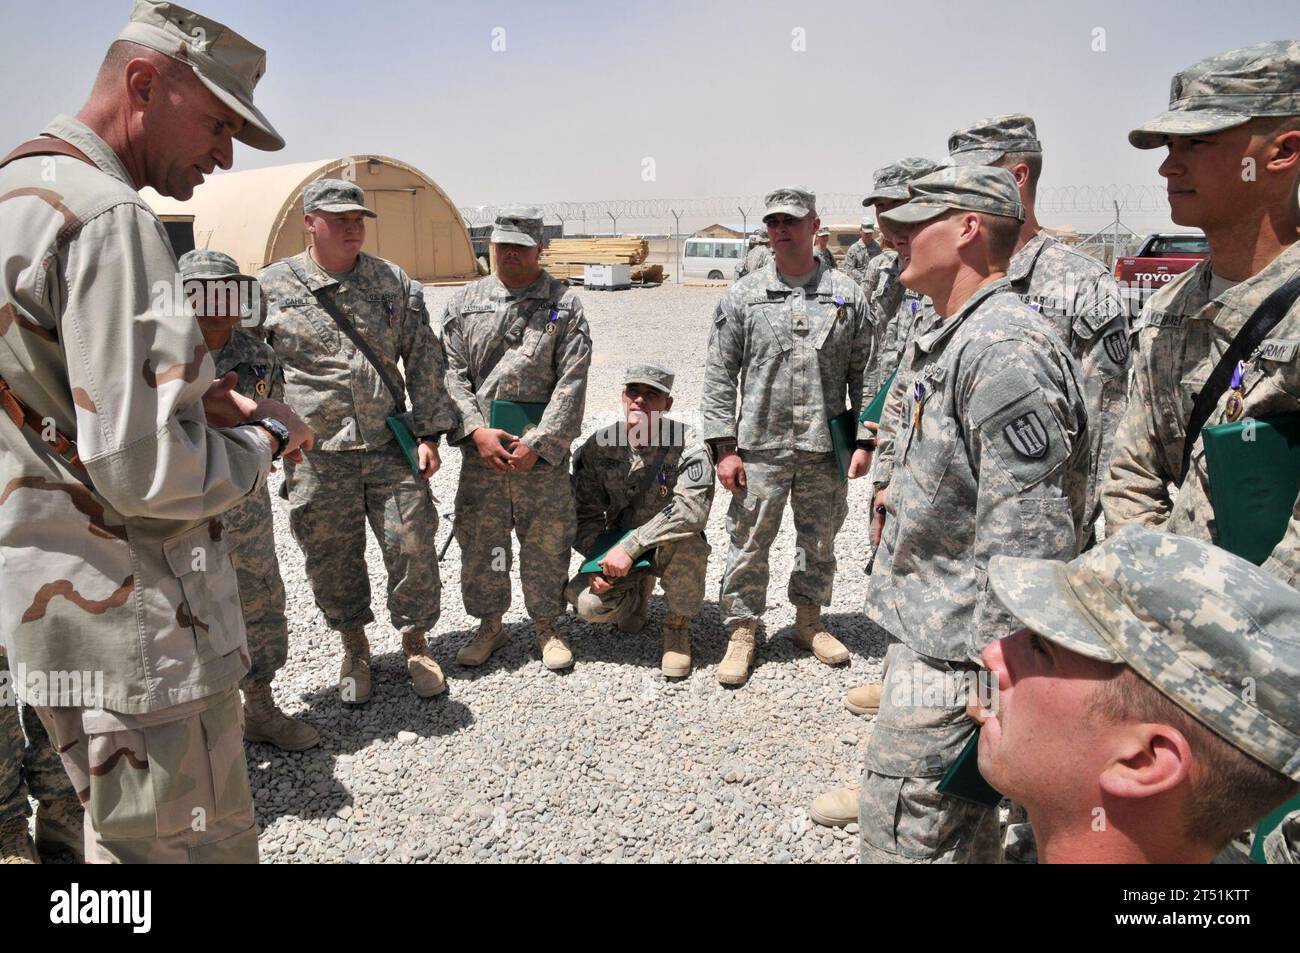 110617IA881-144 CAMP LETHERNECK, Afghanistan (17. Juni 2011) Hauptmann Allan M. Stratman, Kommodore der Task Force Overlord, spricht mit Soldaten, die der 309. Mobility Augmentation Company, dem Ingenieur-Bataillon 863d, zugeteilt wurden, nachdem sie mit Purple Heart Medaillen ausgezeichnet wurden. Die 12 Soldaten wurden bei improvisierten Sprengkörperangriffen auf ihre Streckenräumfahrzeuge verwundet. Die Einheiten unterstützen die Task Force Overlord in Afghanistan. Die Task Force, die von Seabees geleitet wird, die dem 25th Naval Construction Regiment zugeordnet sind, ist für die Bau- und Bauingenieurwesen im Süden, Südwesten und Westen zuständig Stockfoto